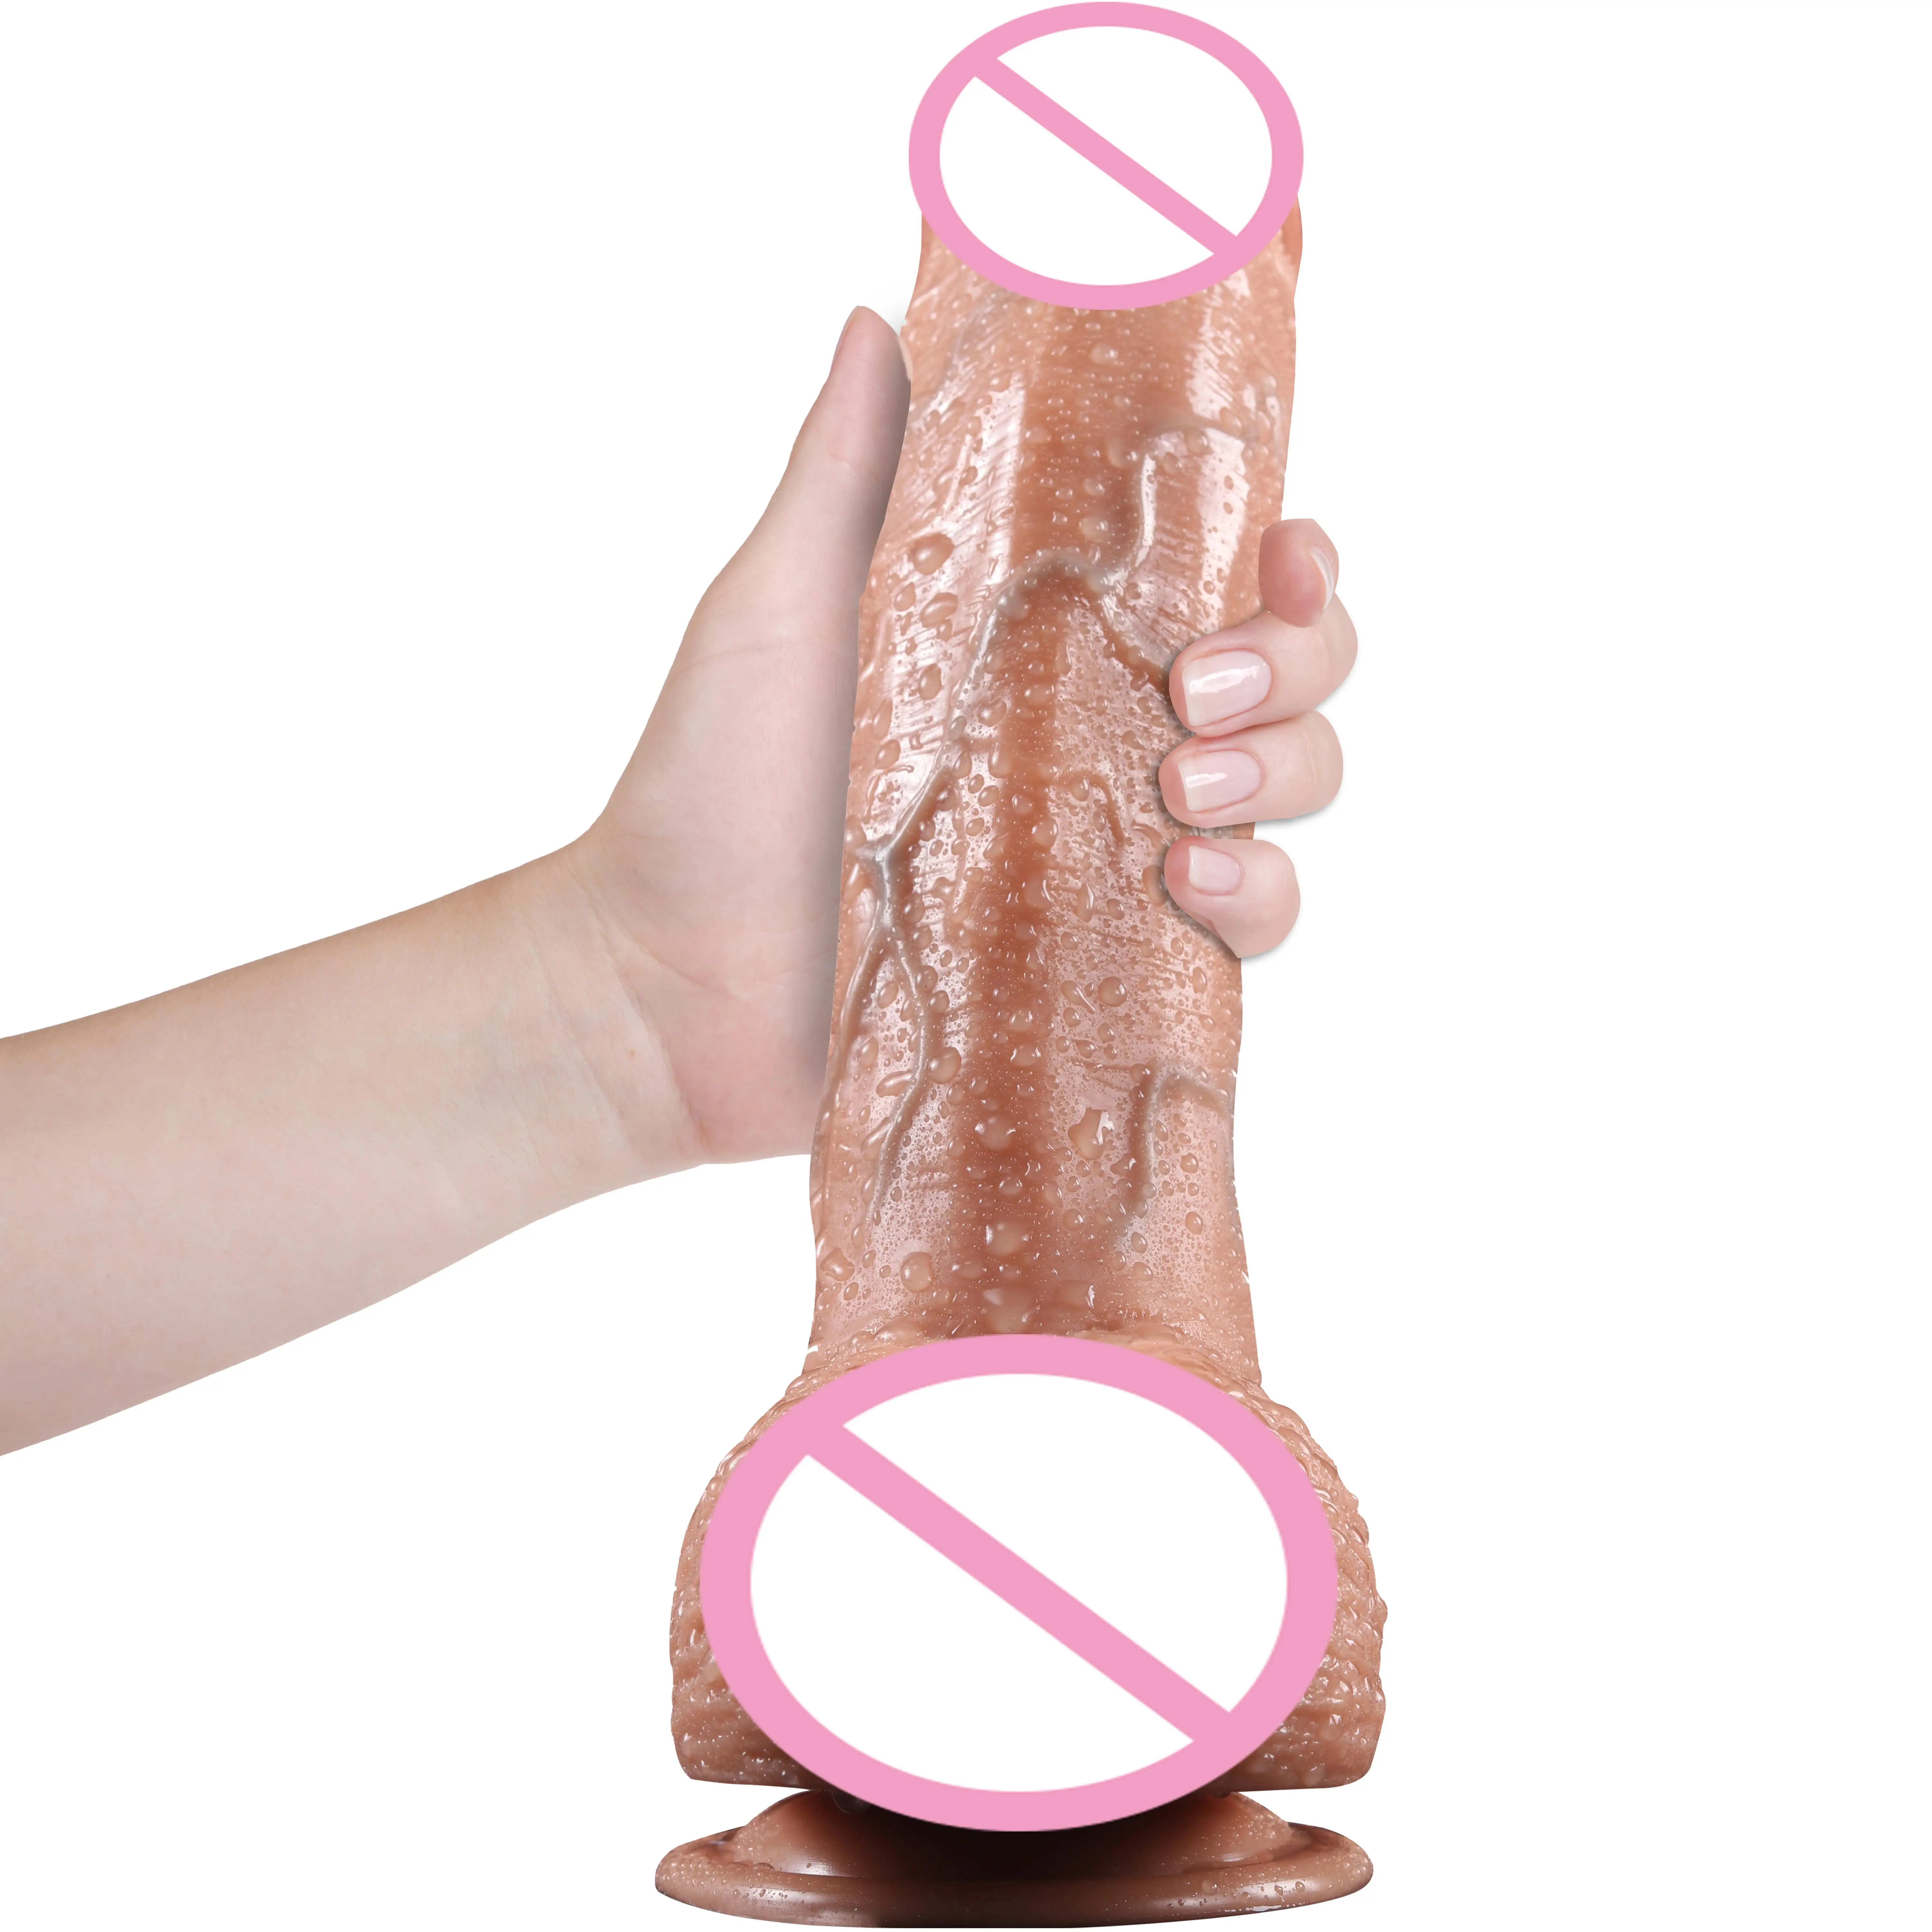 Adultos 9 pulgadas realista grueso grandes silicona artificial realista pene juguete sexual consoladores para mujeres señora masturbándose juguetes sexuales